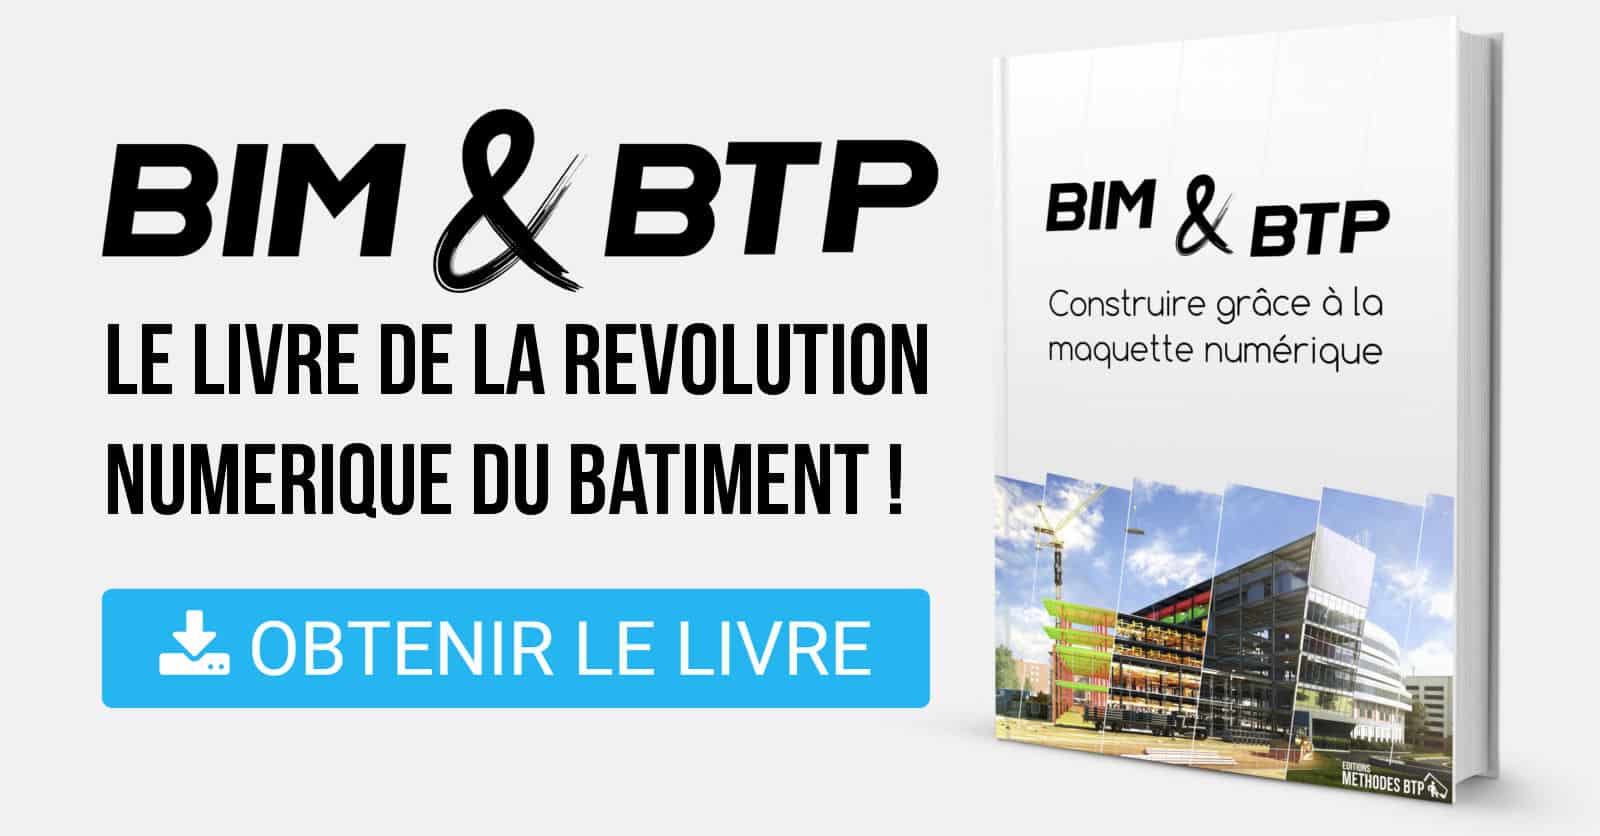 BIM & BTP / Le livre